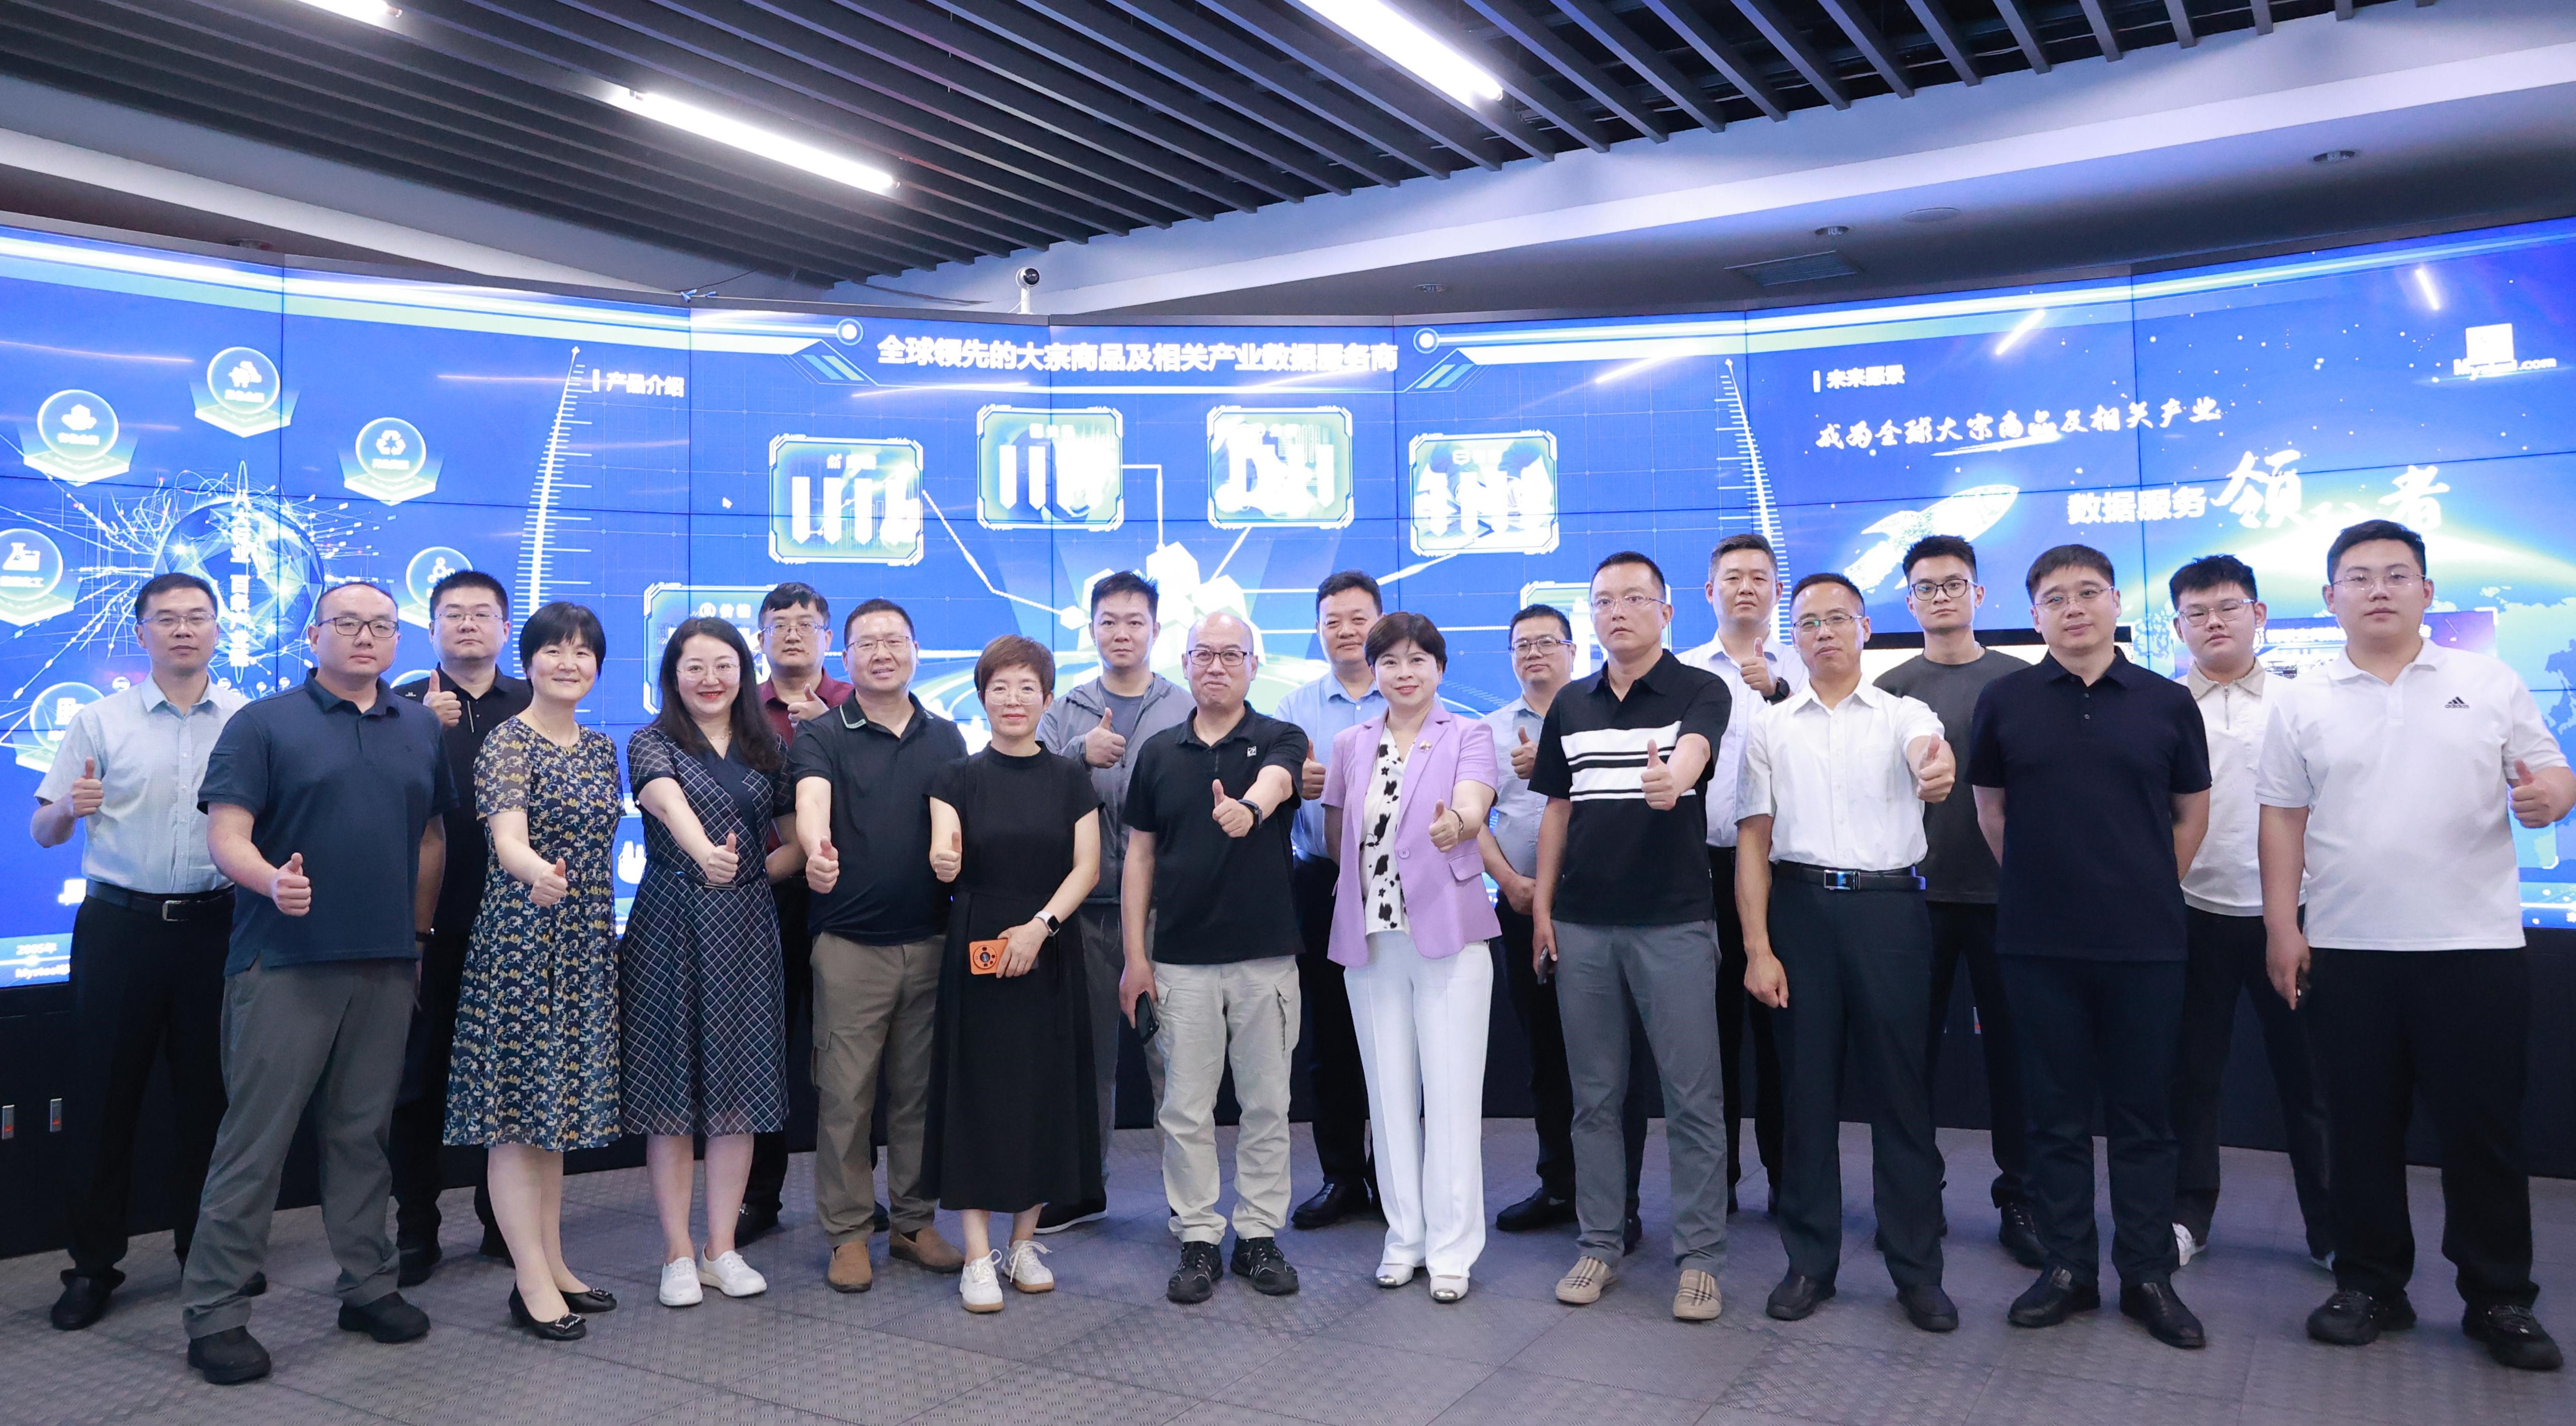 西浦产业家高级研修项目在上海钢联成功举行